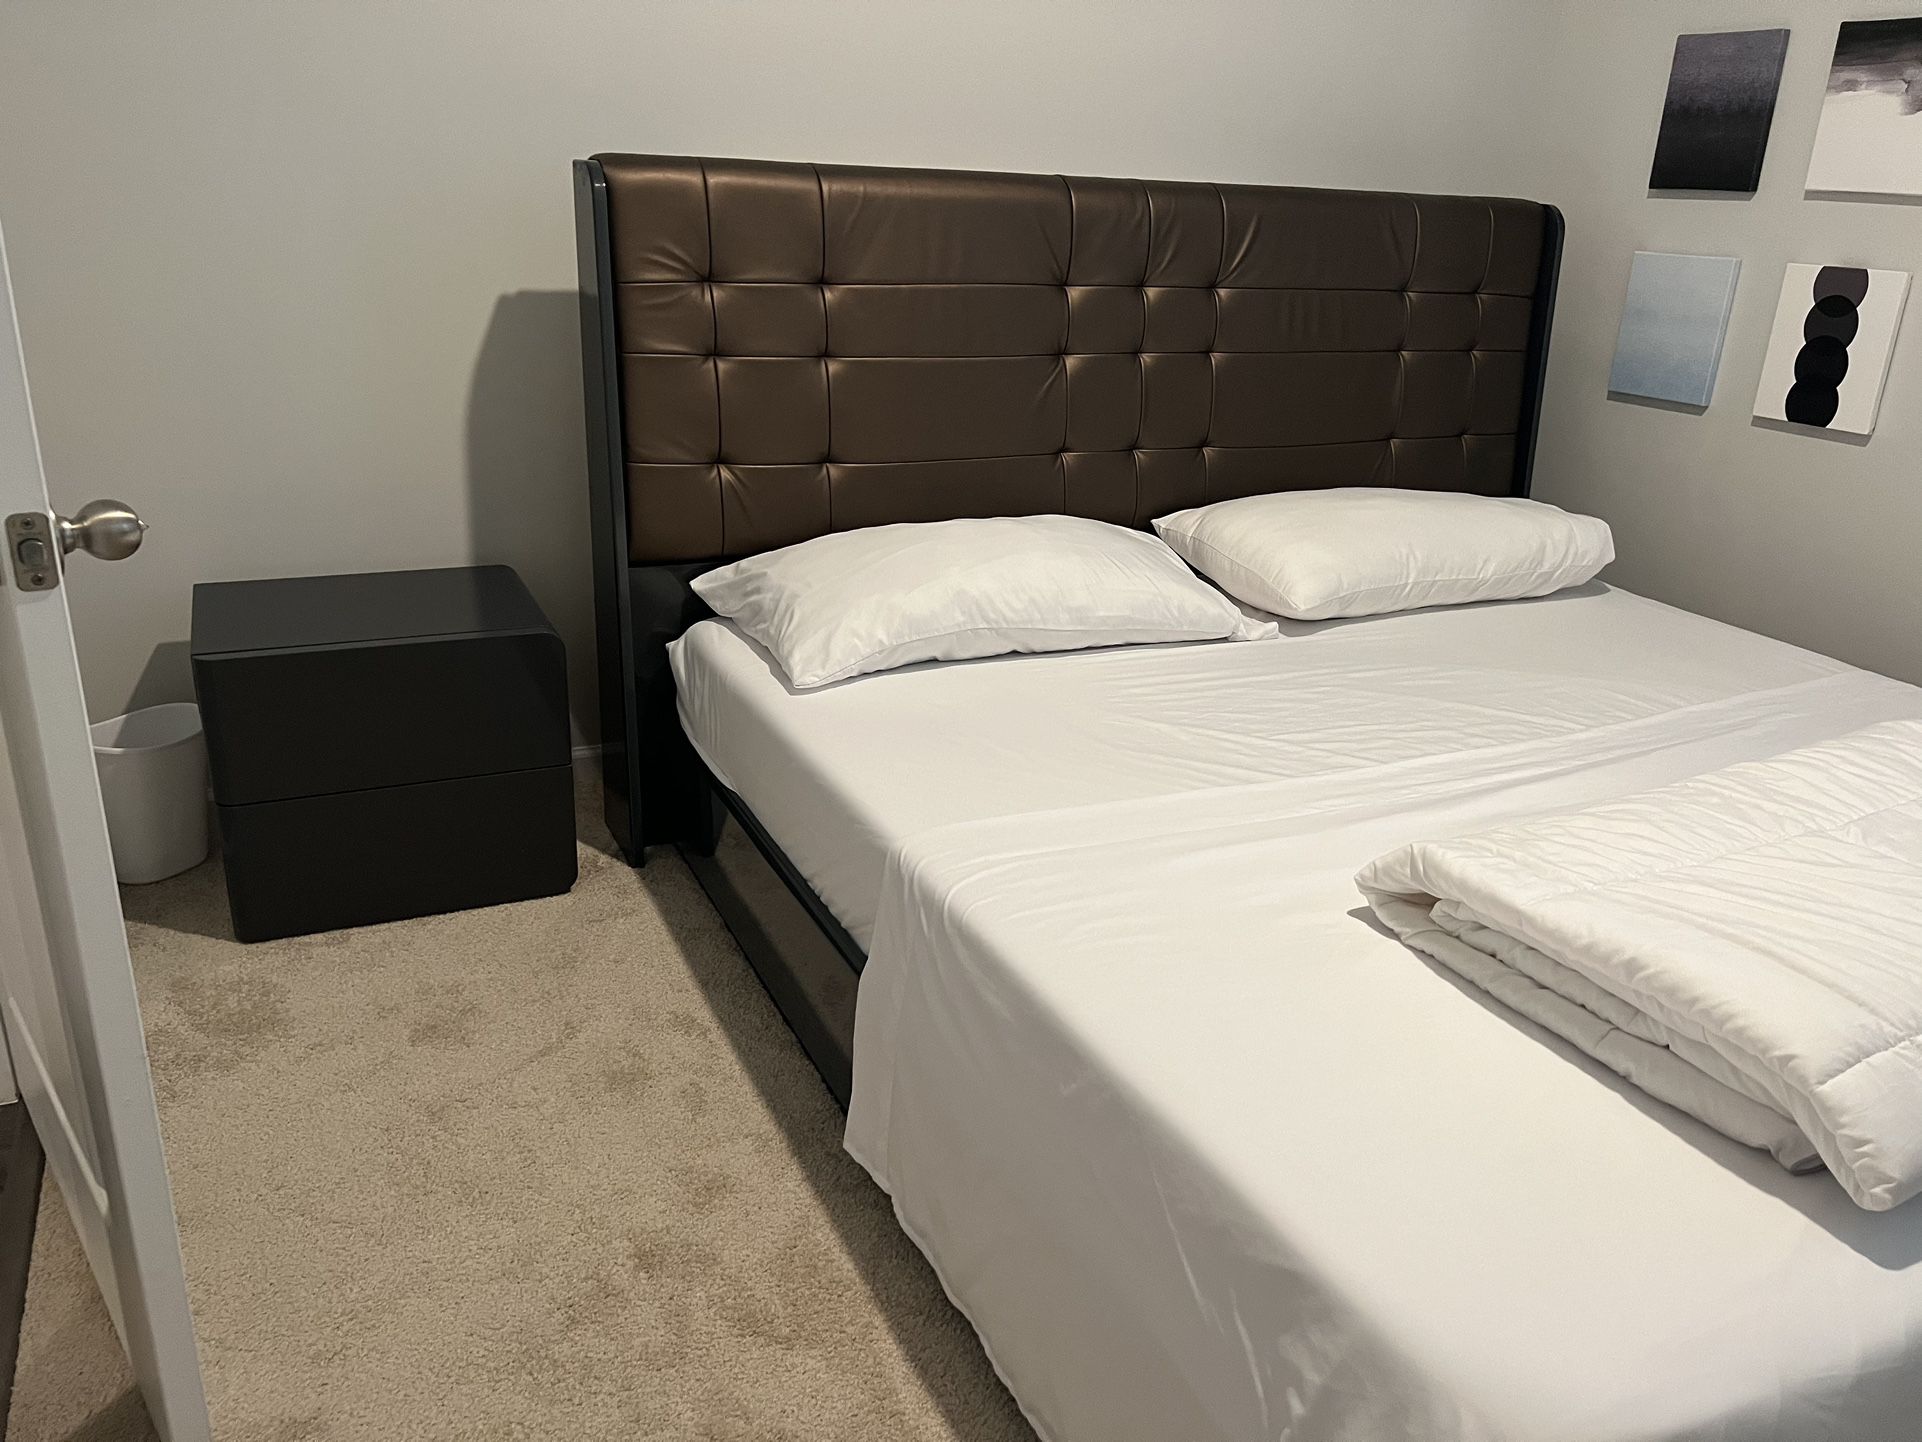 King-size Bedroom Set 